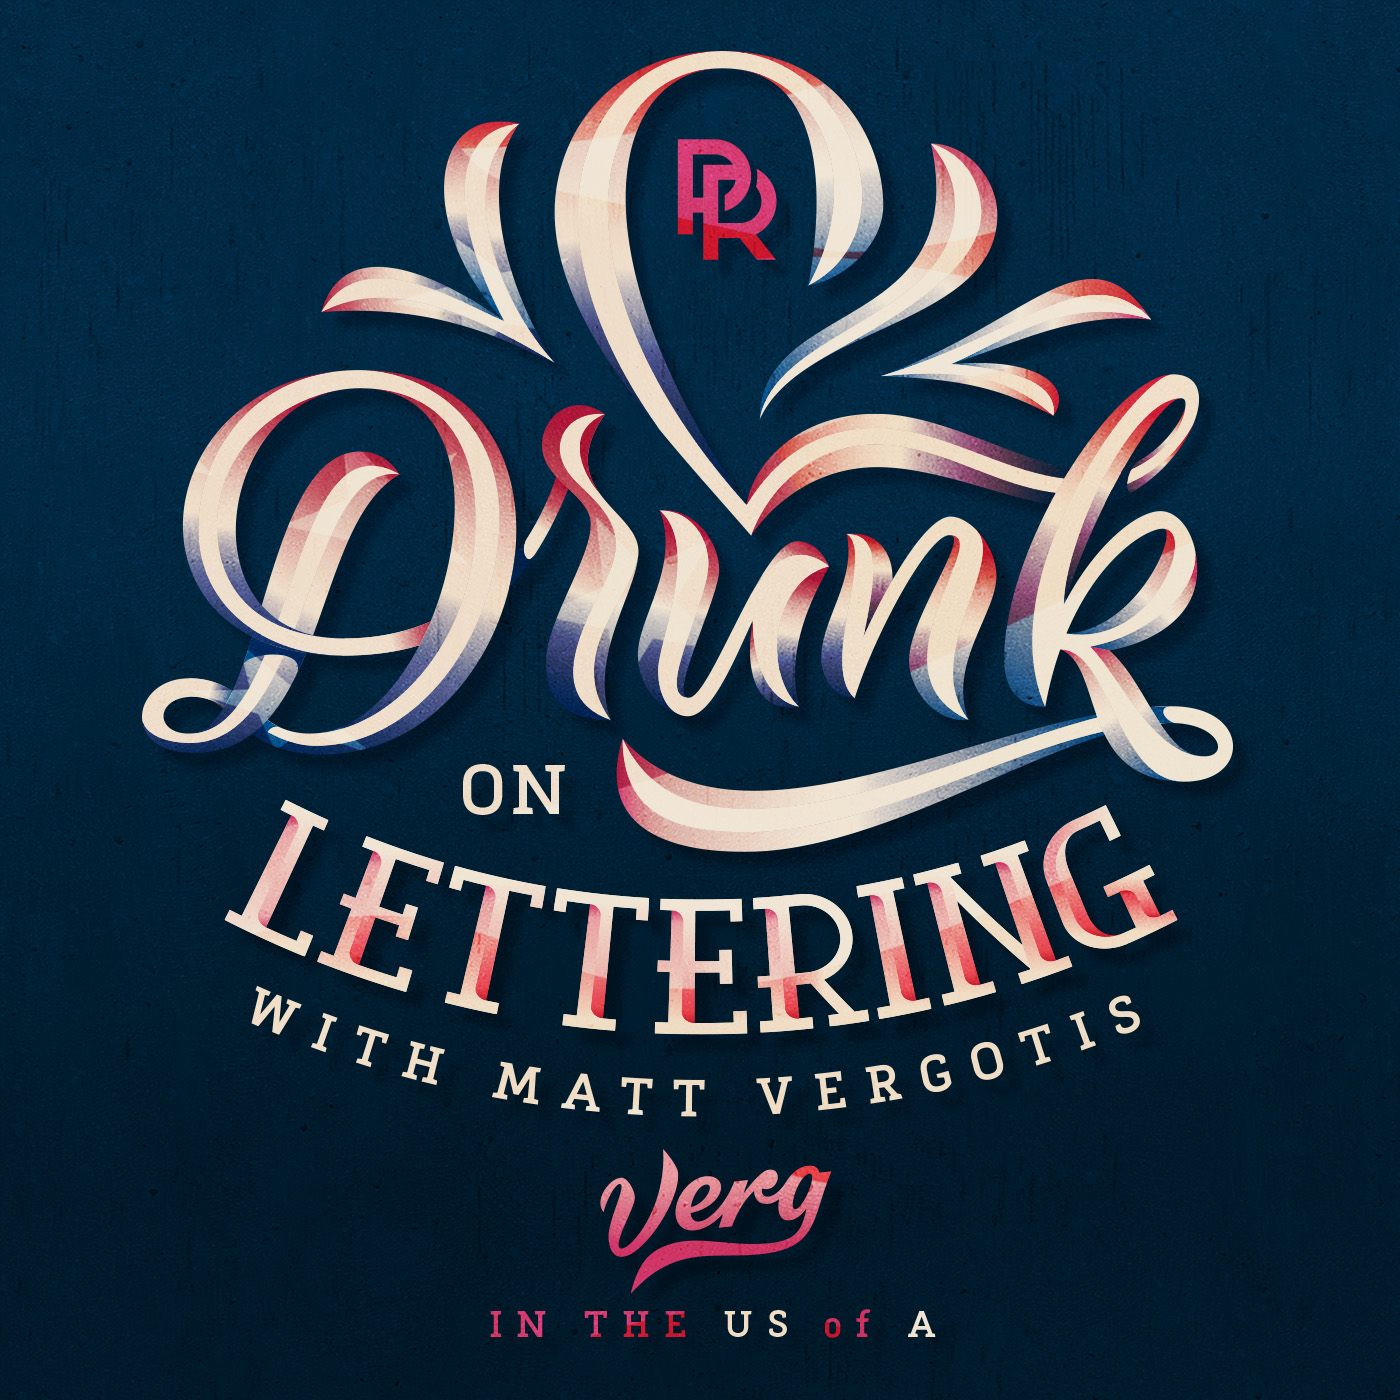 dribbble-drunk-on-lettering-jpg-by-matt-vergotis